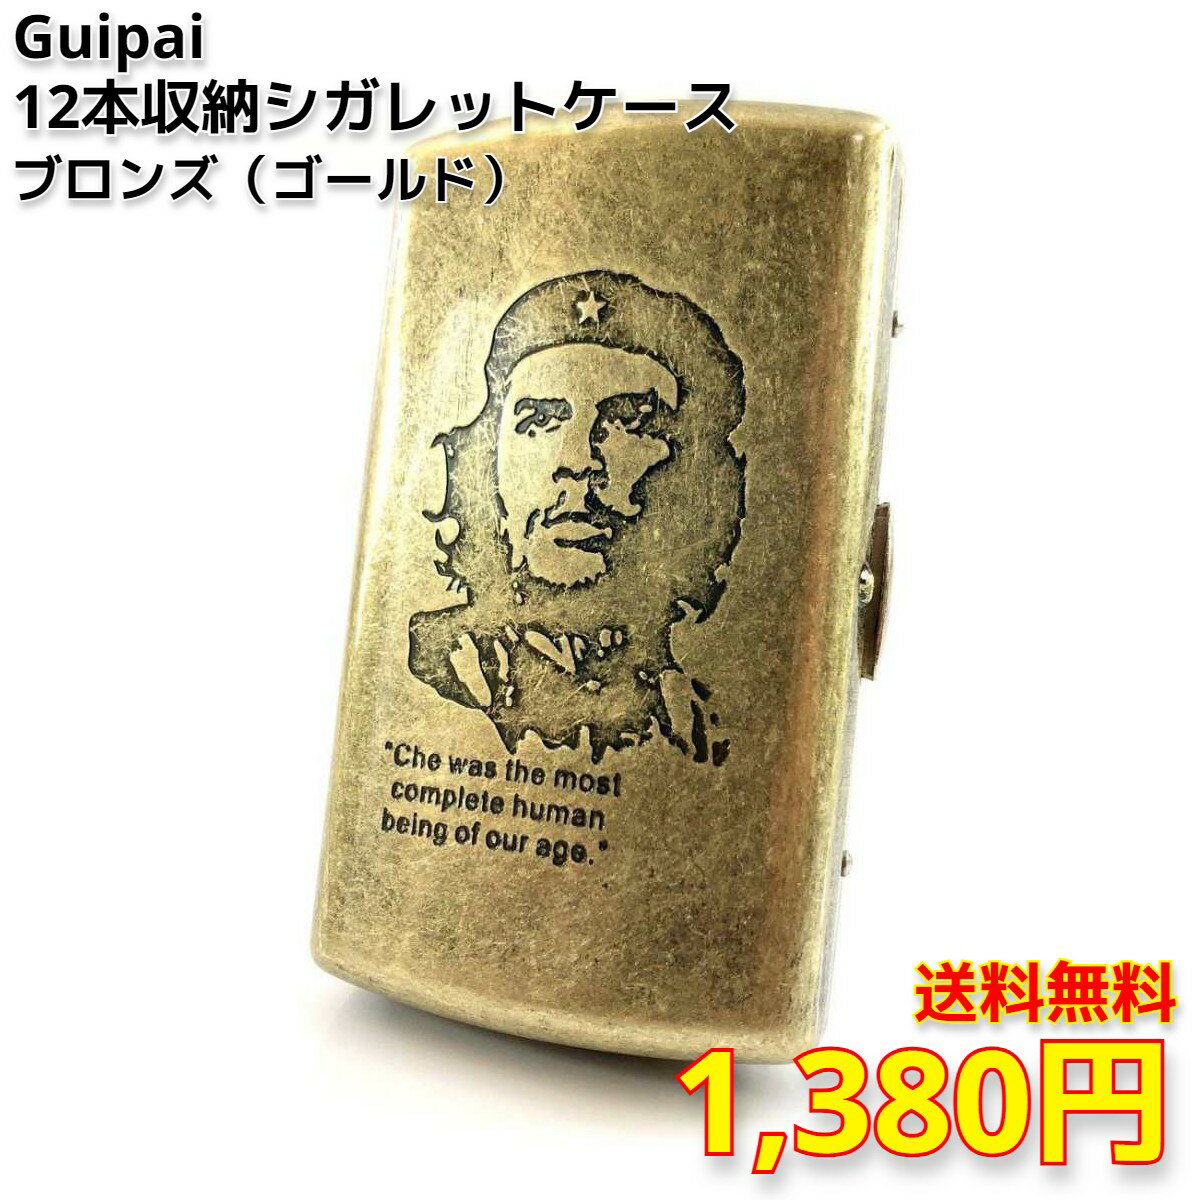 【送料無料・保証書付】 Guipai/グイ